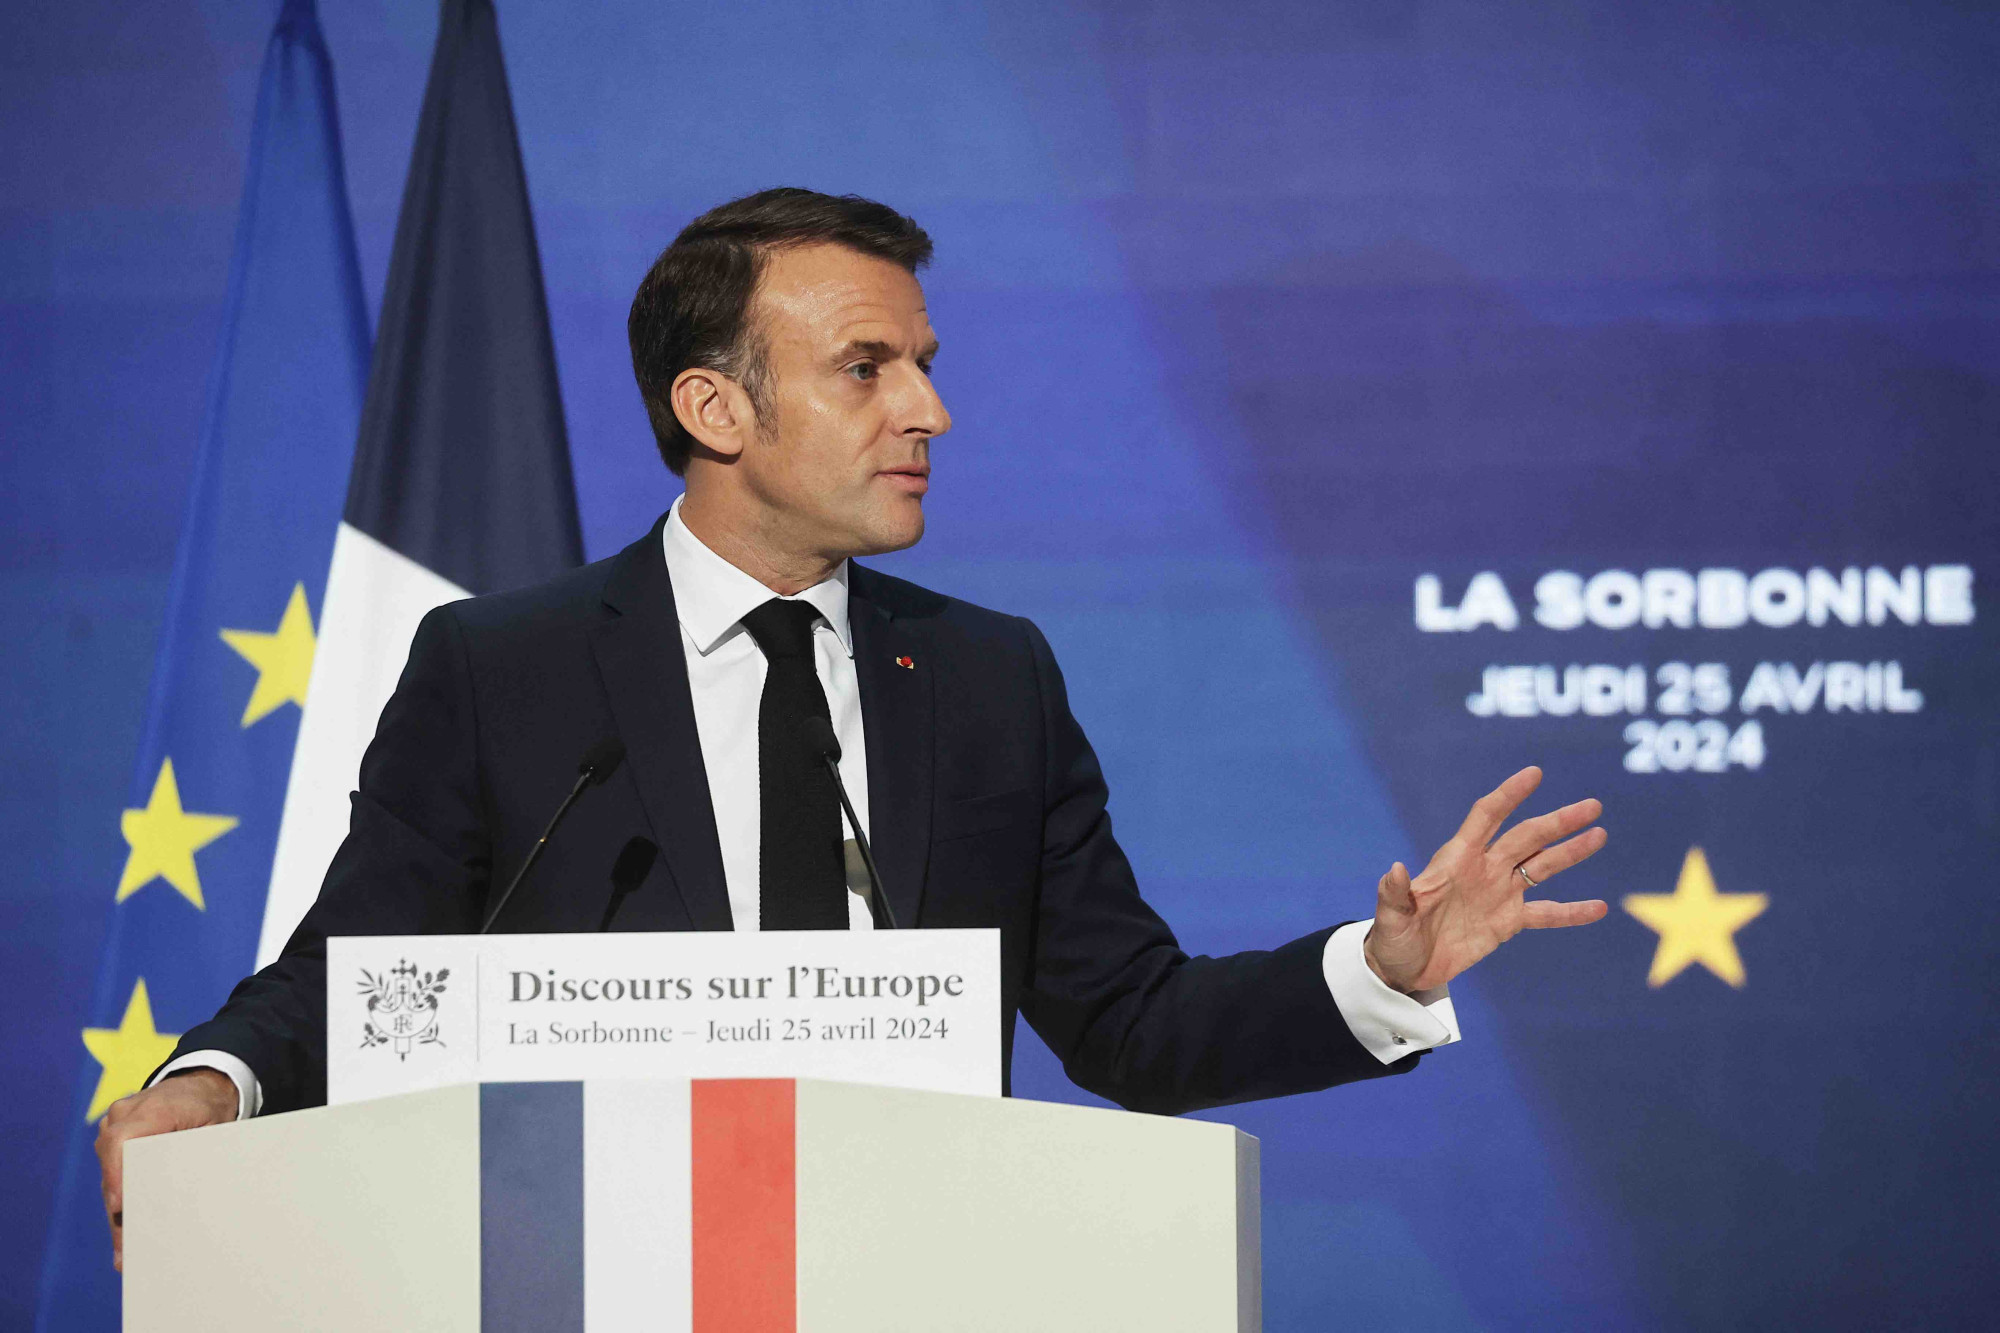 Emmanuel Macron dresse un portrait alarmiste l'Europe à la Sorbonne : une "hypocrisie terrible" selon les oppositions